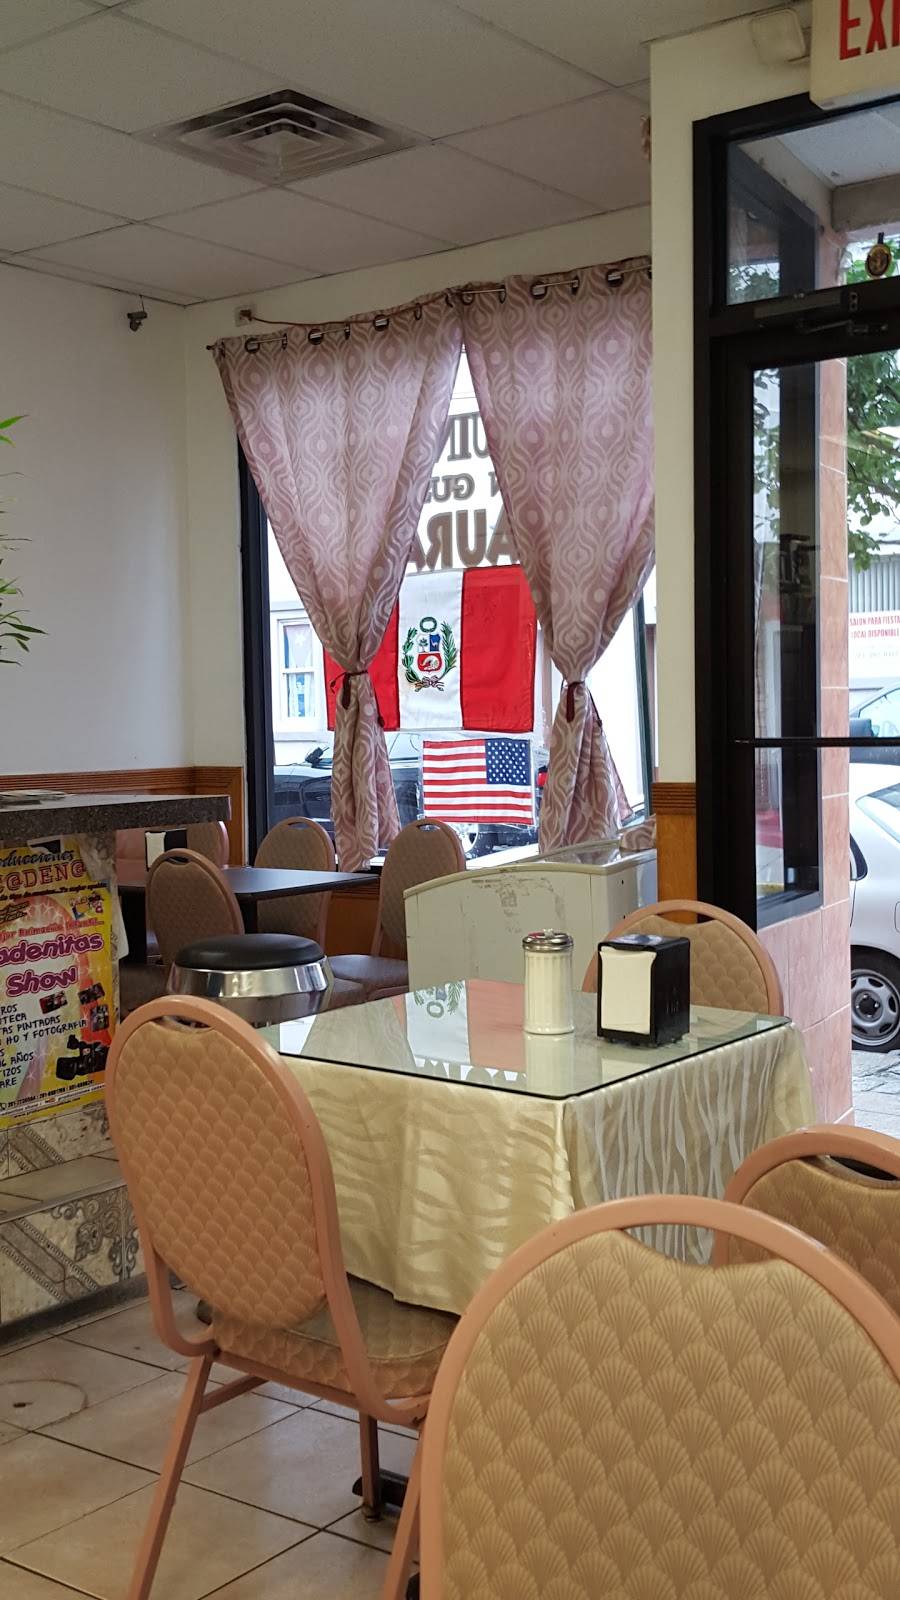 La Esquina Del Buen Gusto | restaurant | 4114 Palisade Ave, Union City, NJ 07087, USA | 2013920112 OR +1 201-392-0112